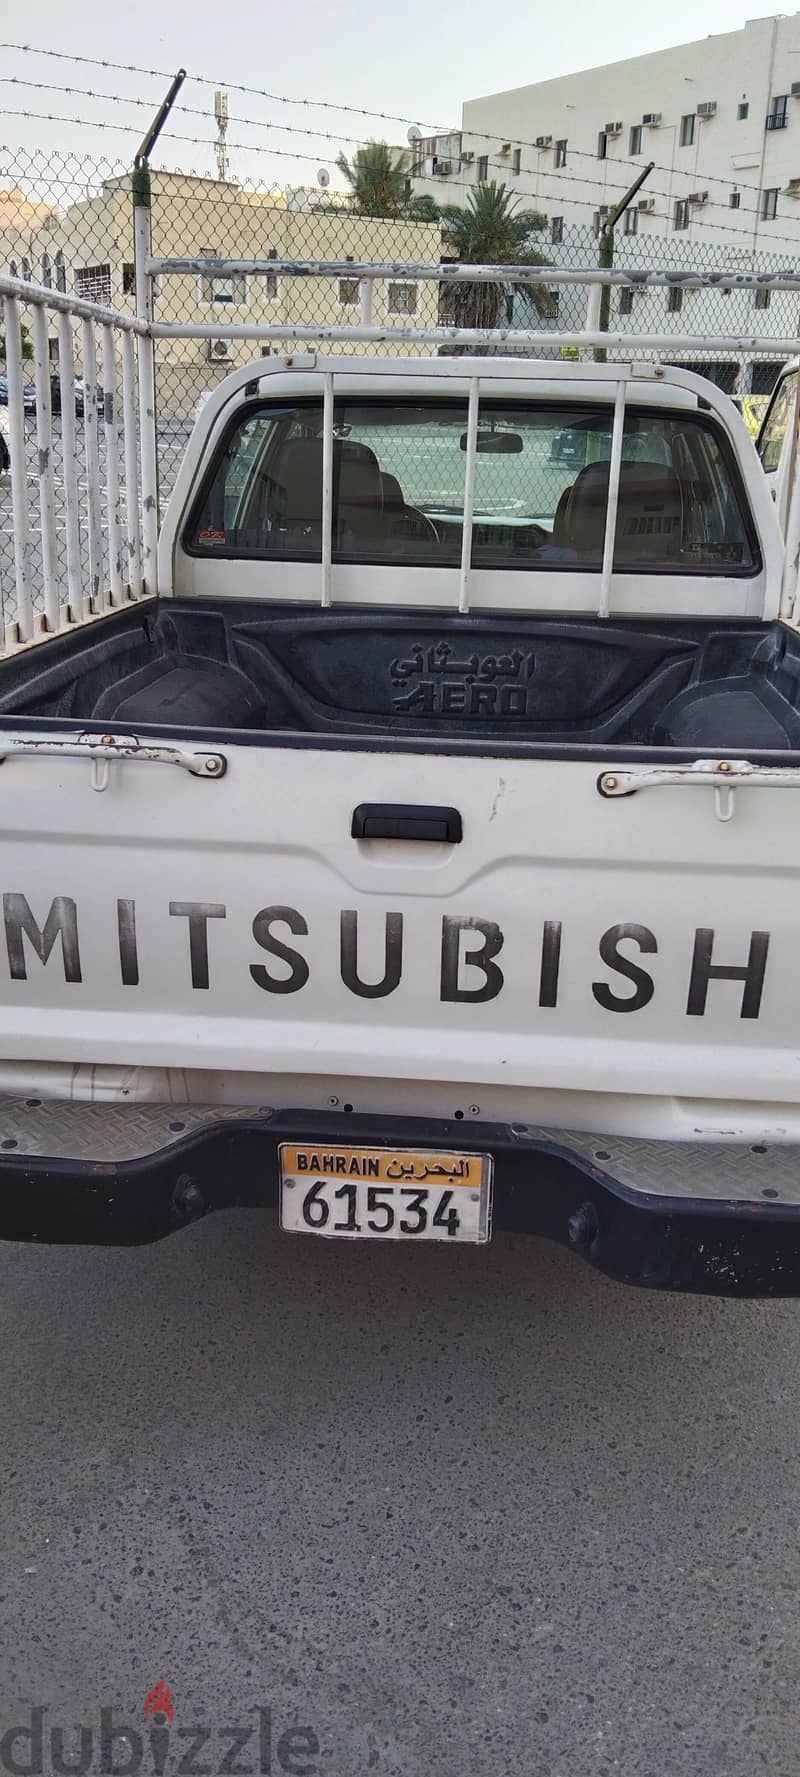 Mitsubishi pickup 3